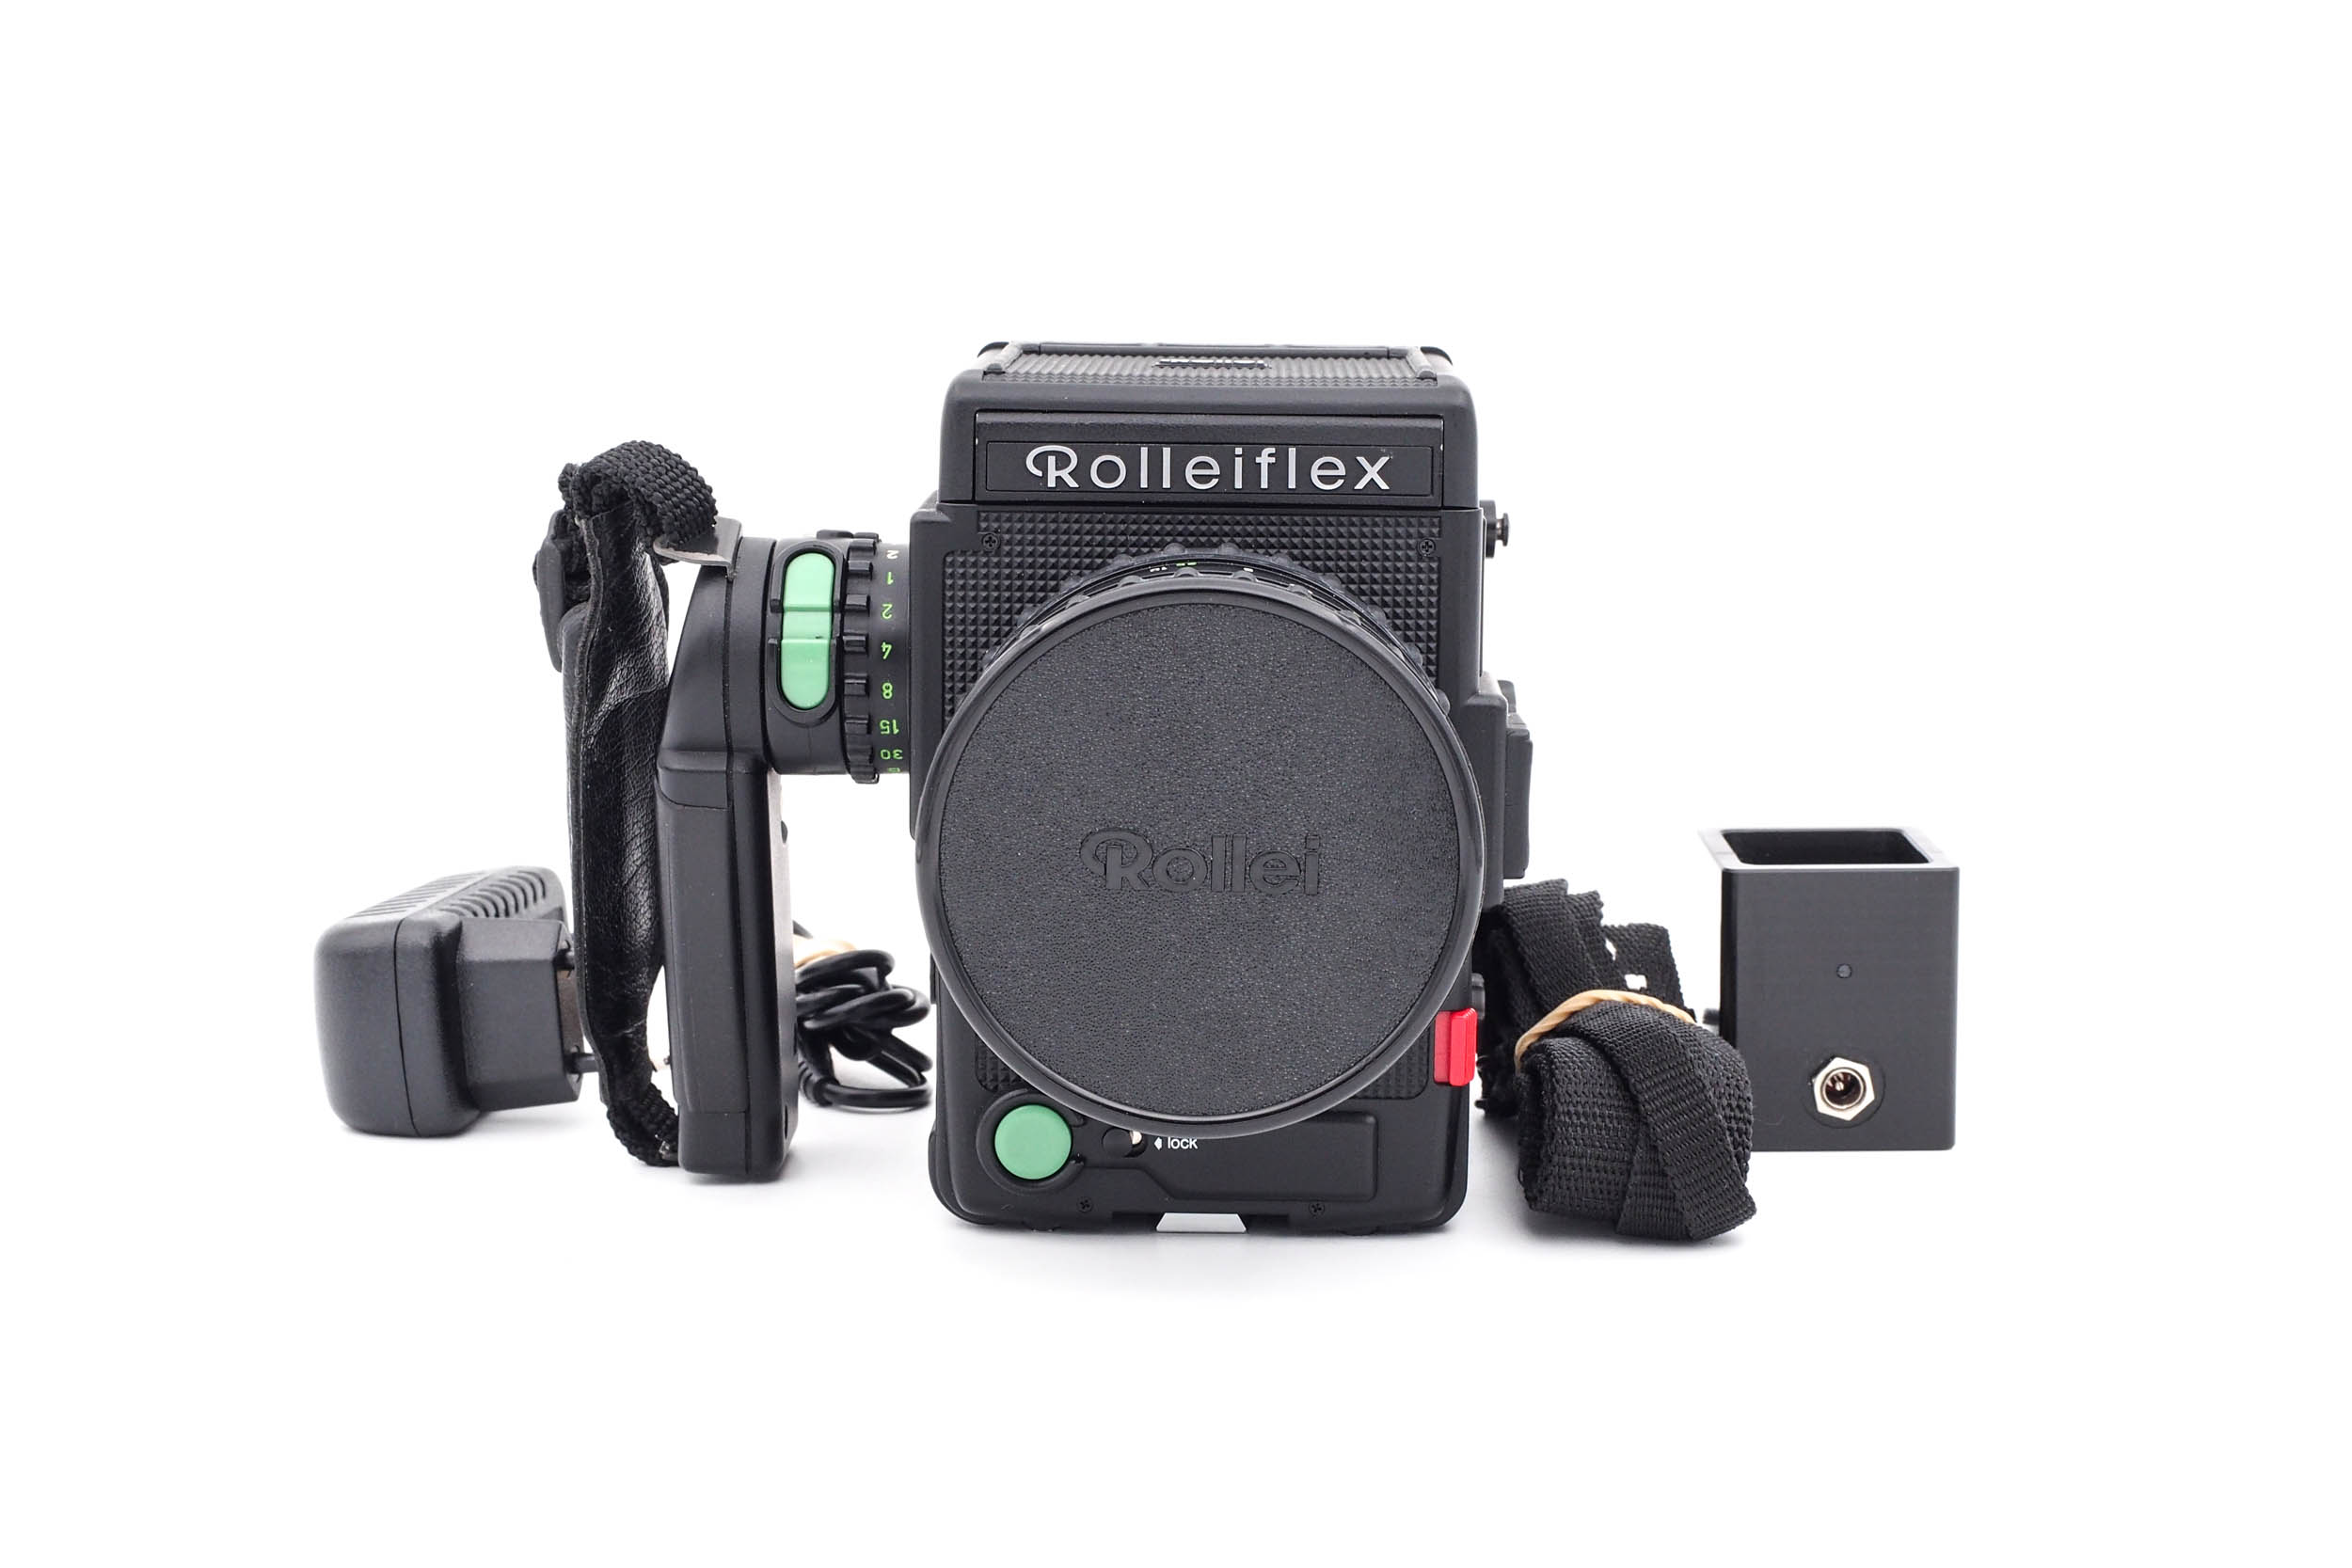 Rolleiflex 6008 Professional + Schneider Kreuznach Xenotar 80mm f/2.8 HFT PQ